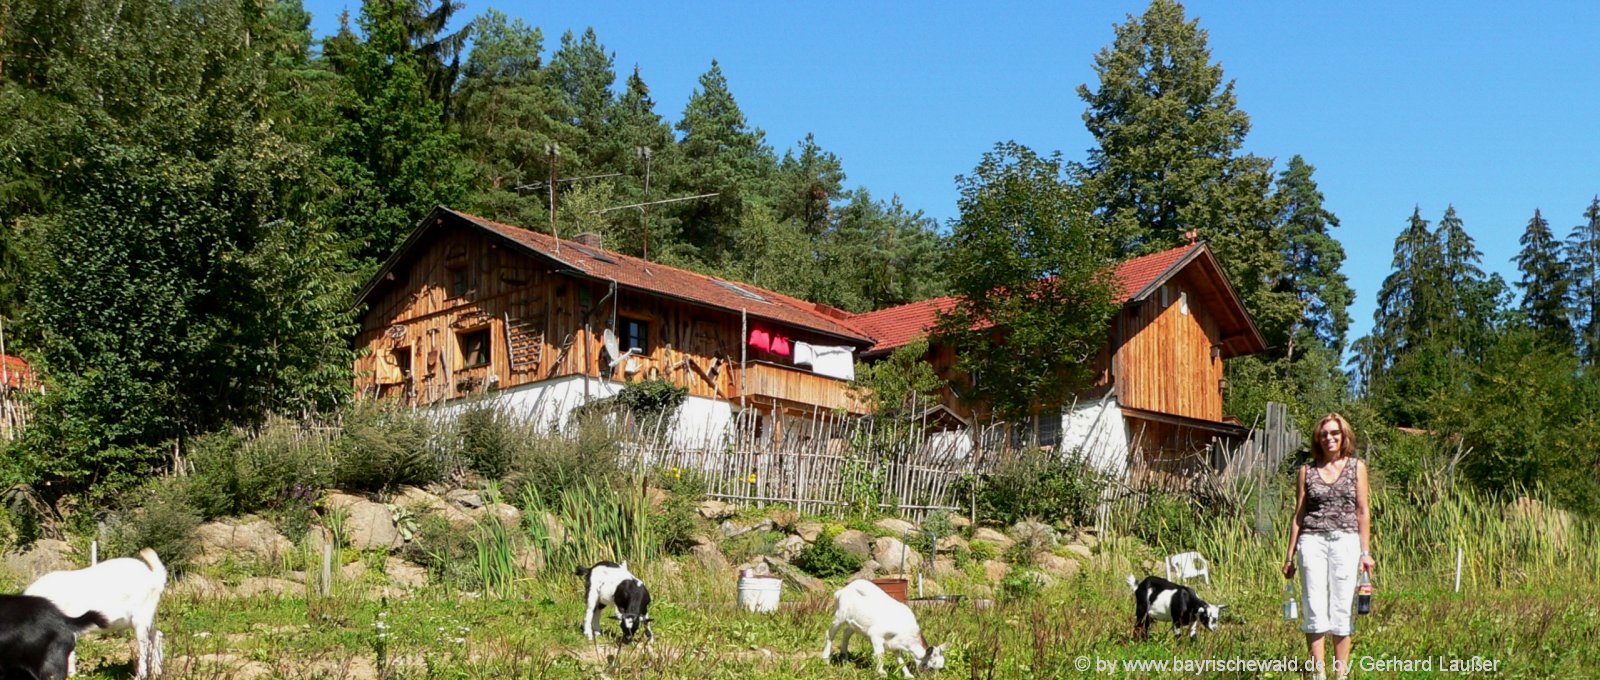 Bayerischer Wald Pensionen in Bayern mit Halbpension, Pool oder Hund